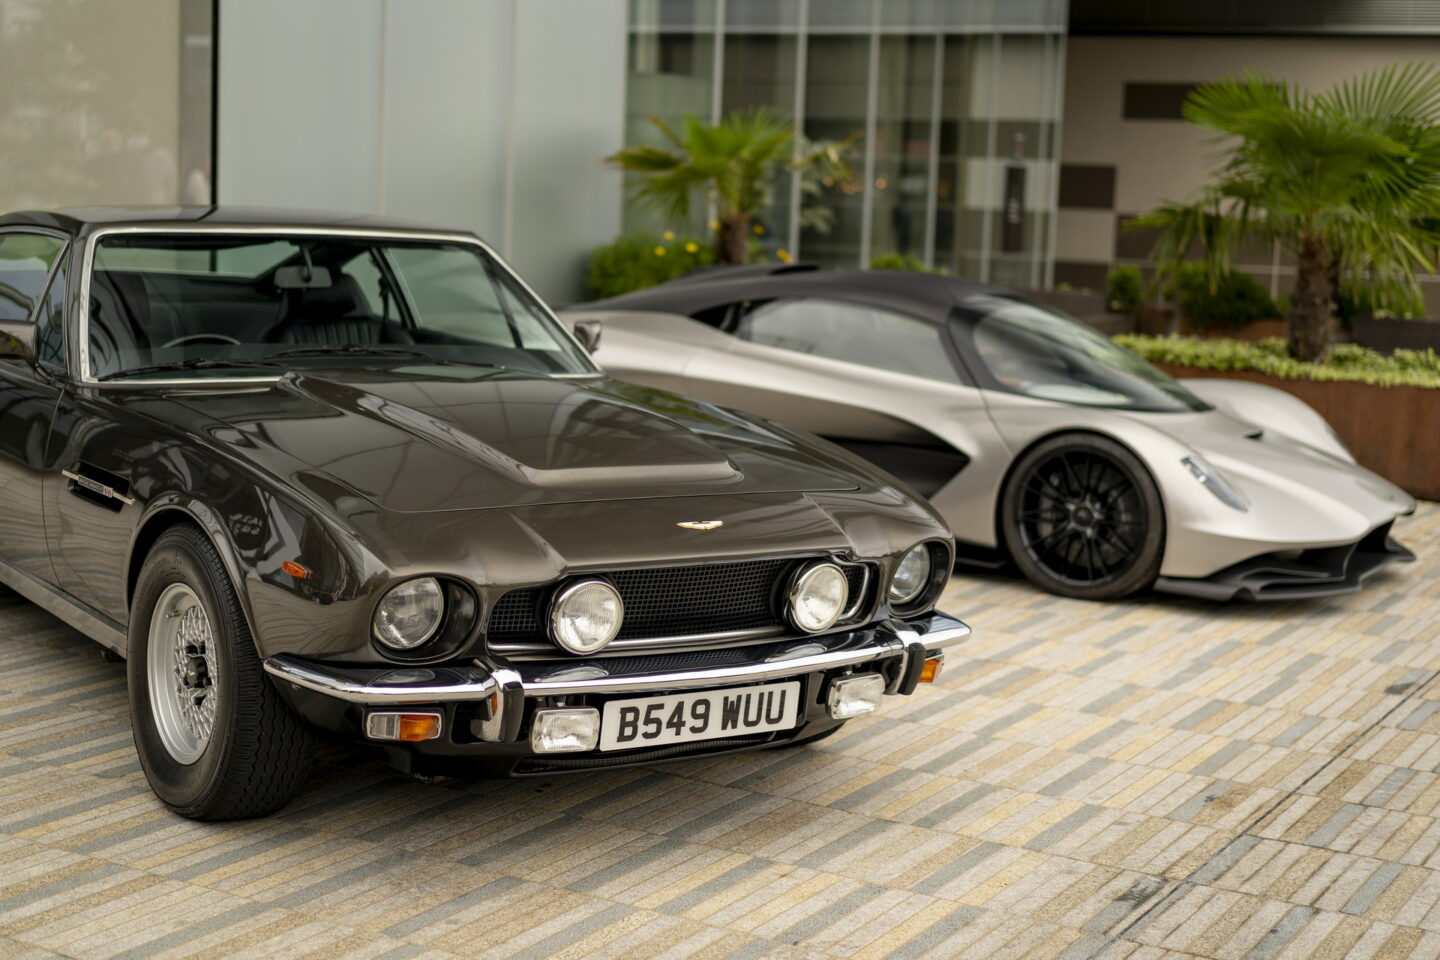 Aston Martin no time to die 007